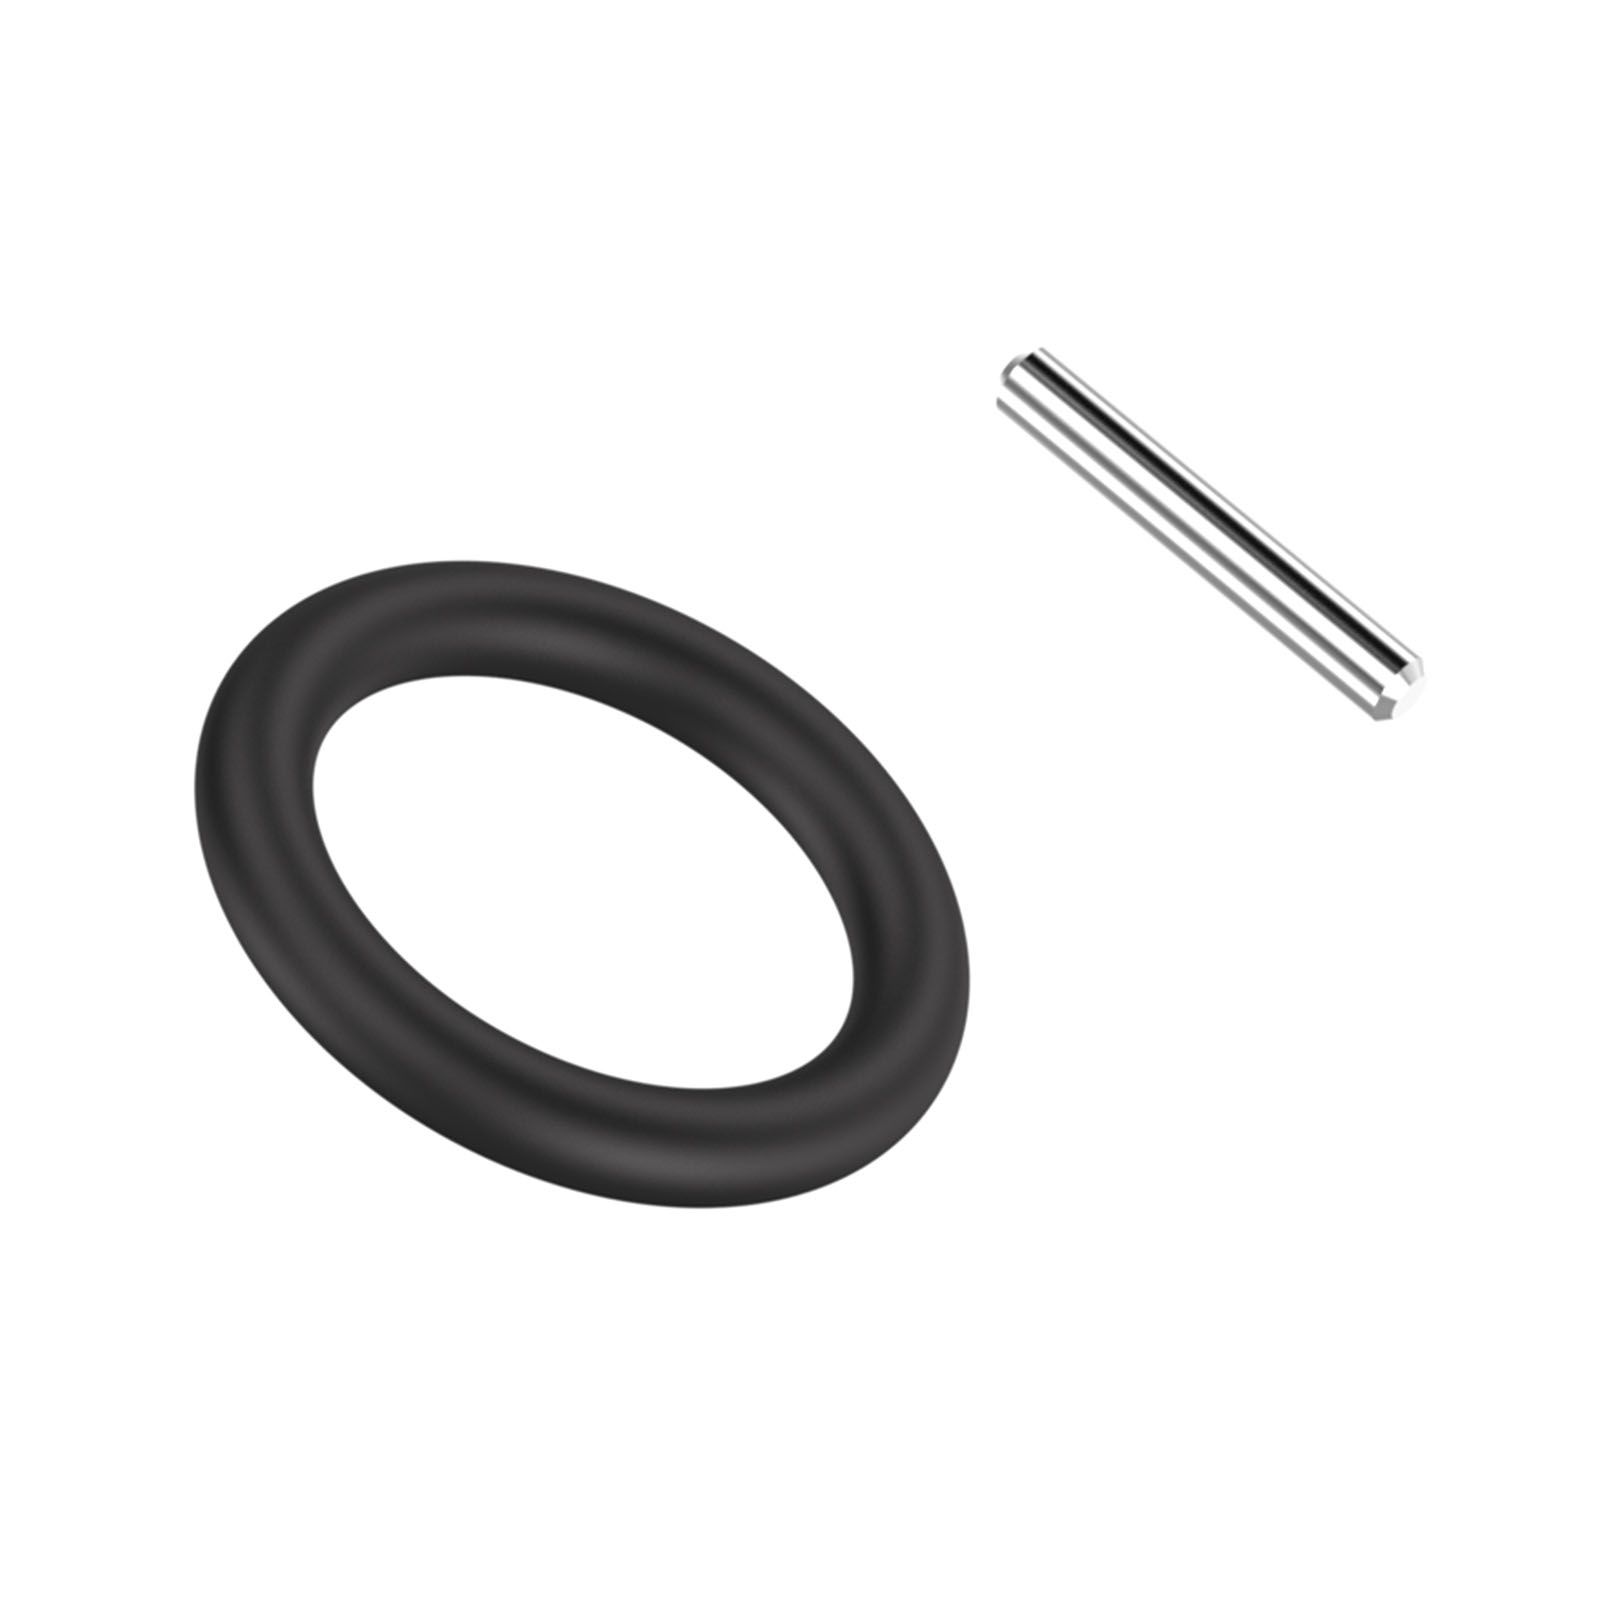 Pin and O-ring set-SQ5/8 product photo